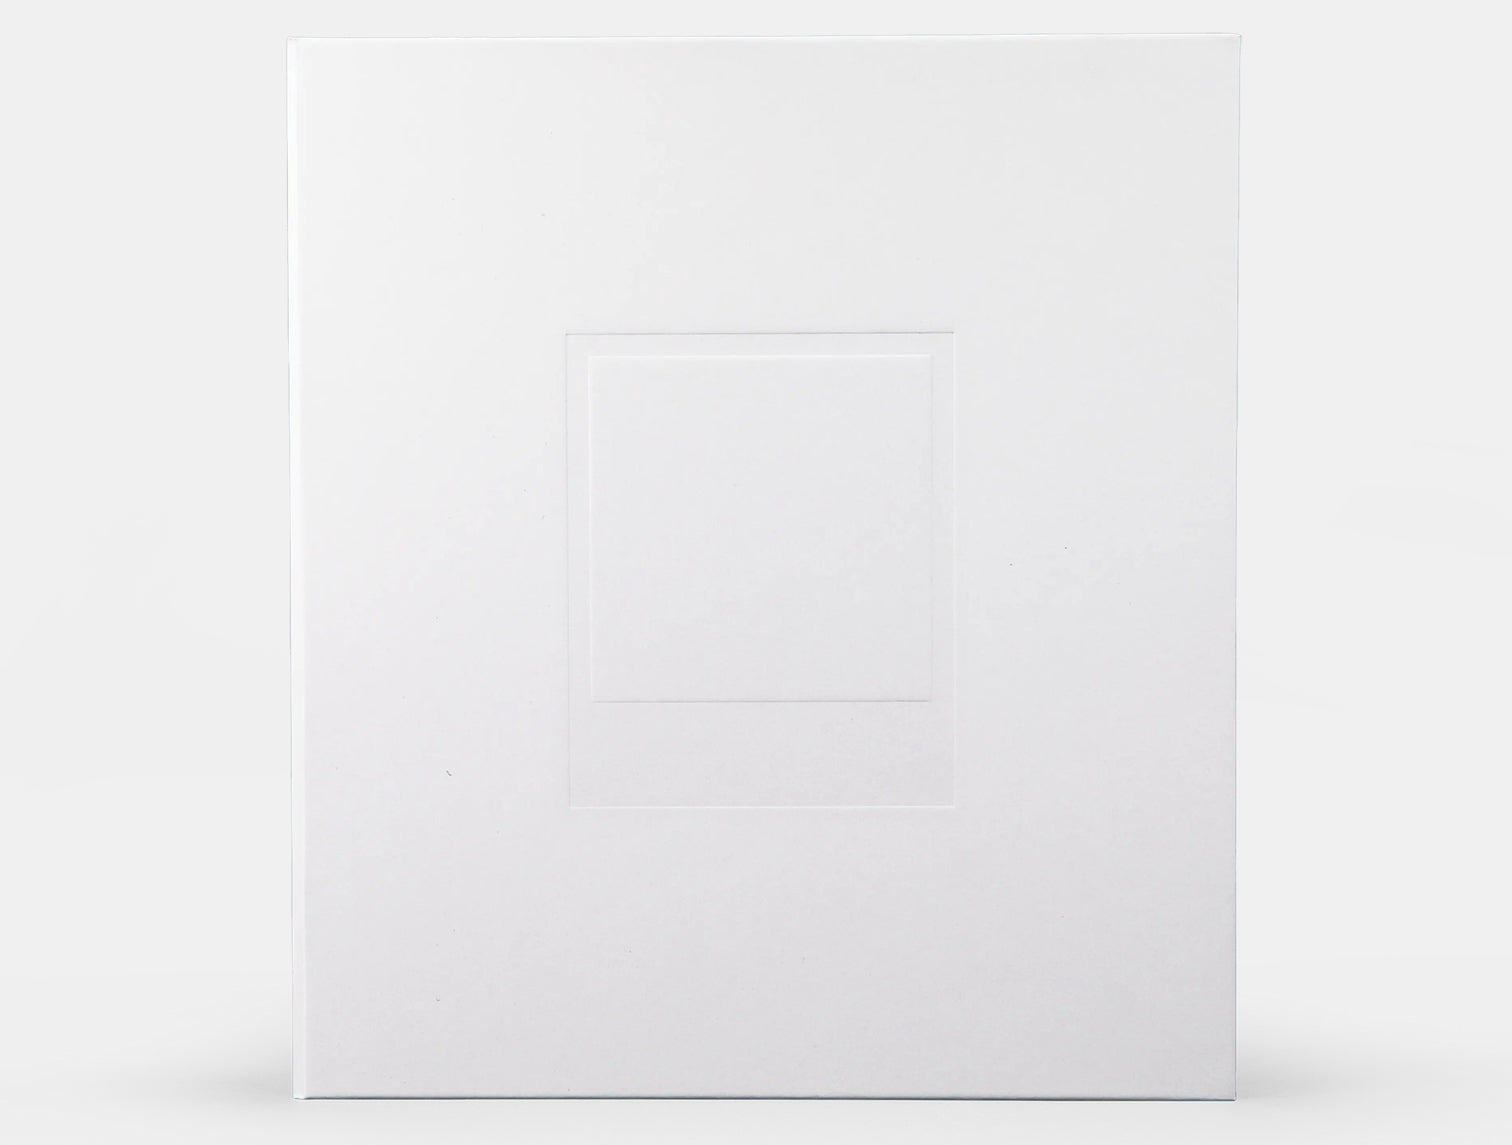 Polaroid Photo Album White - Large